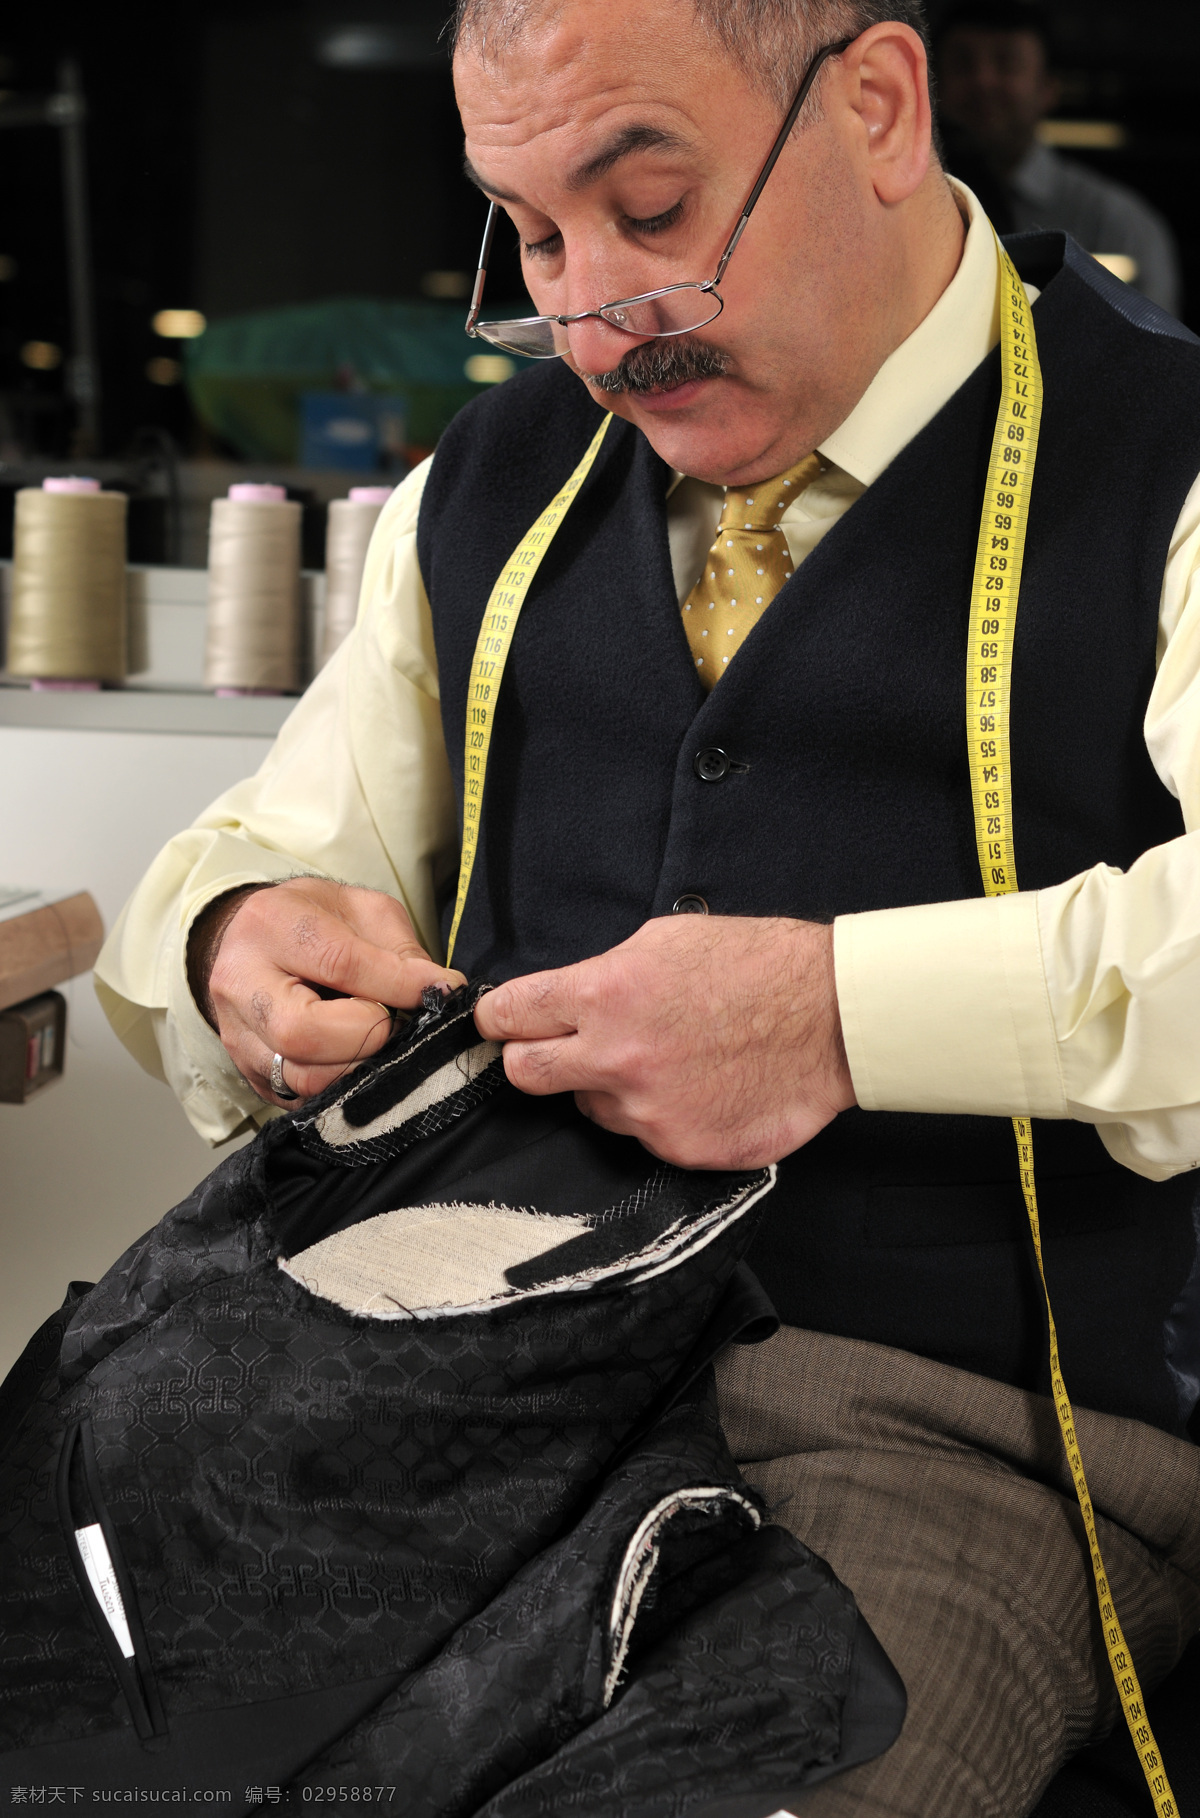 正在 缝 衣服 外国 老人 外国人 男人 缝衣服 米尺 工具 生活人物 人物图片